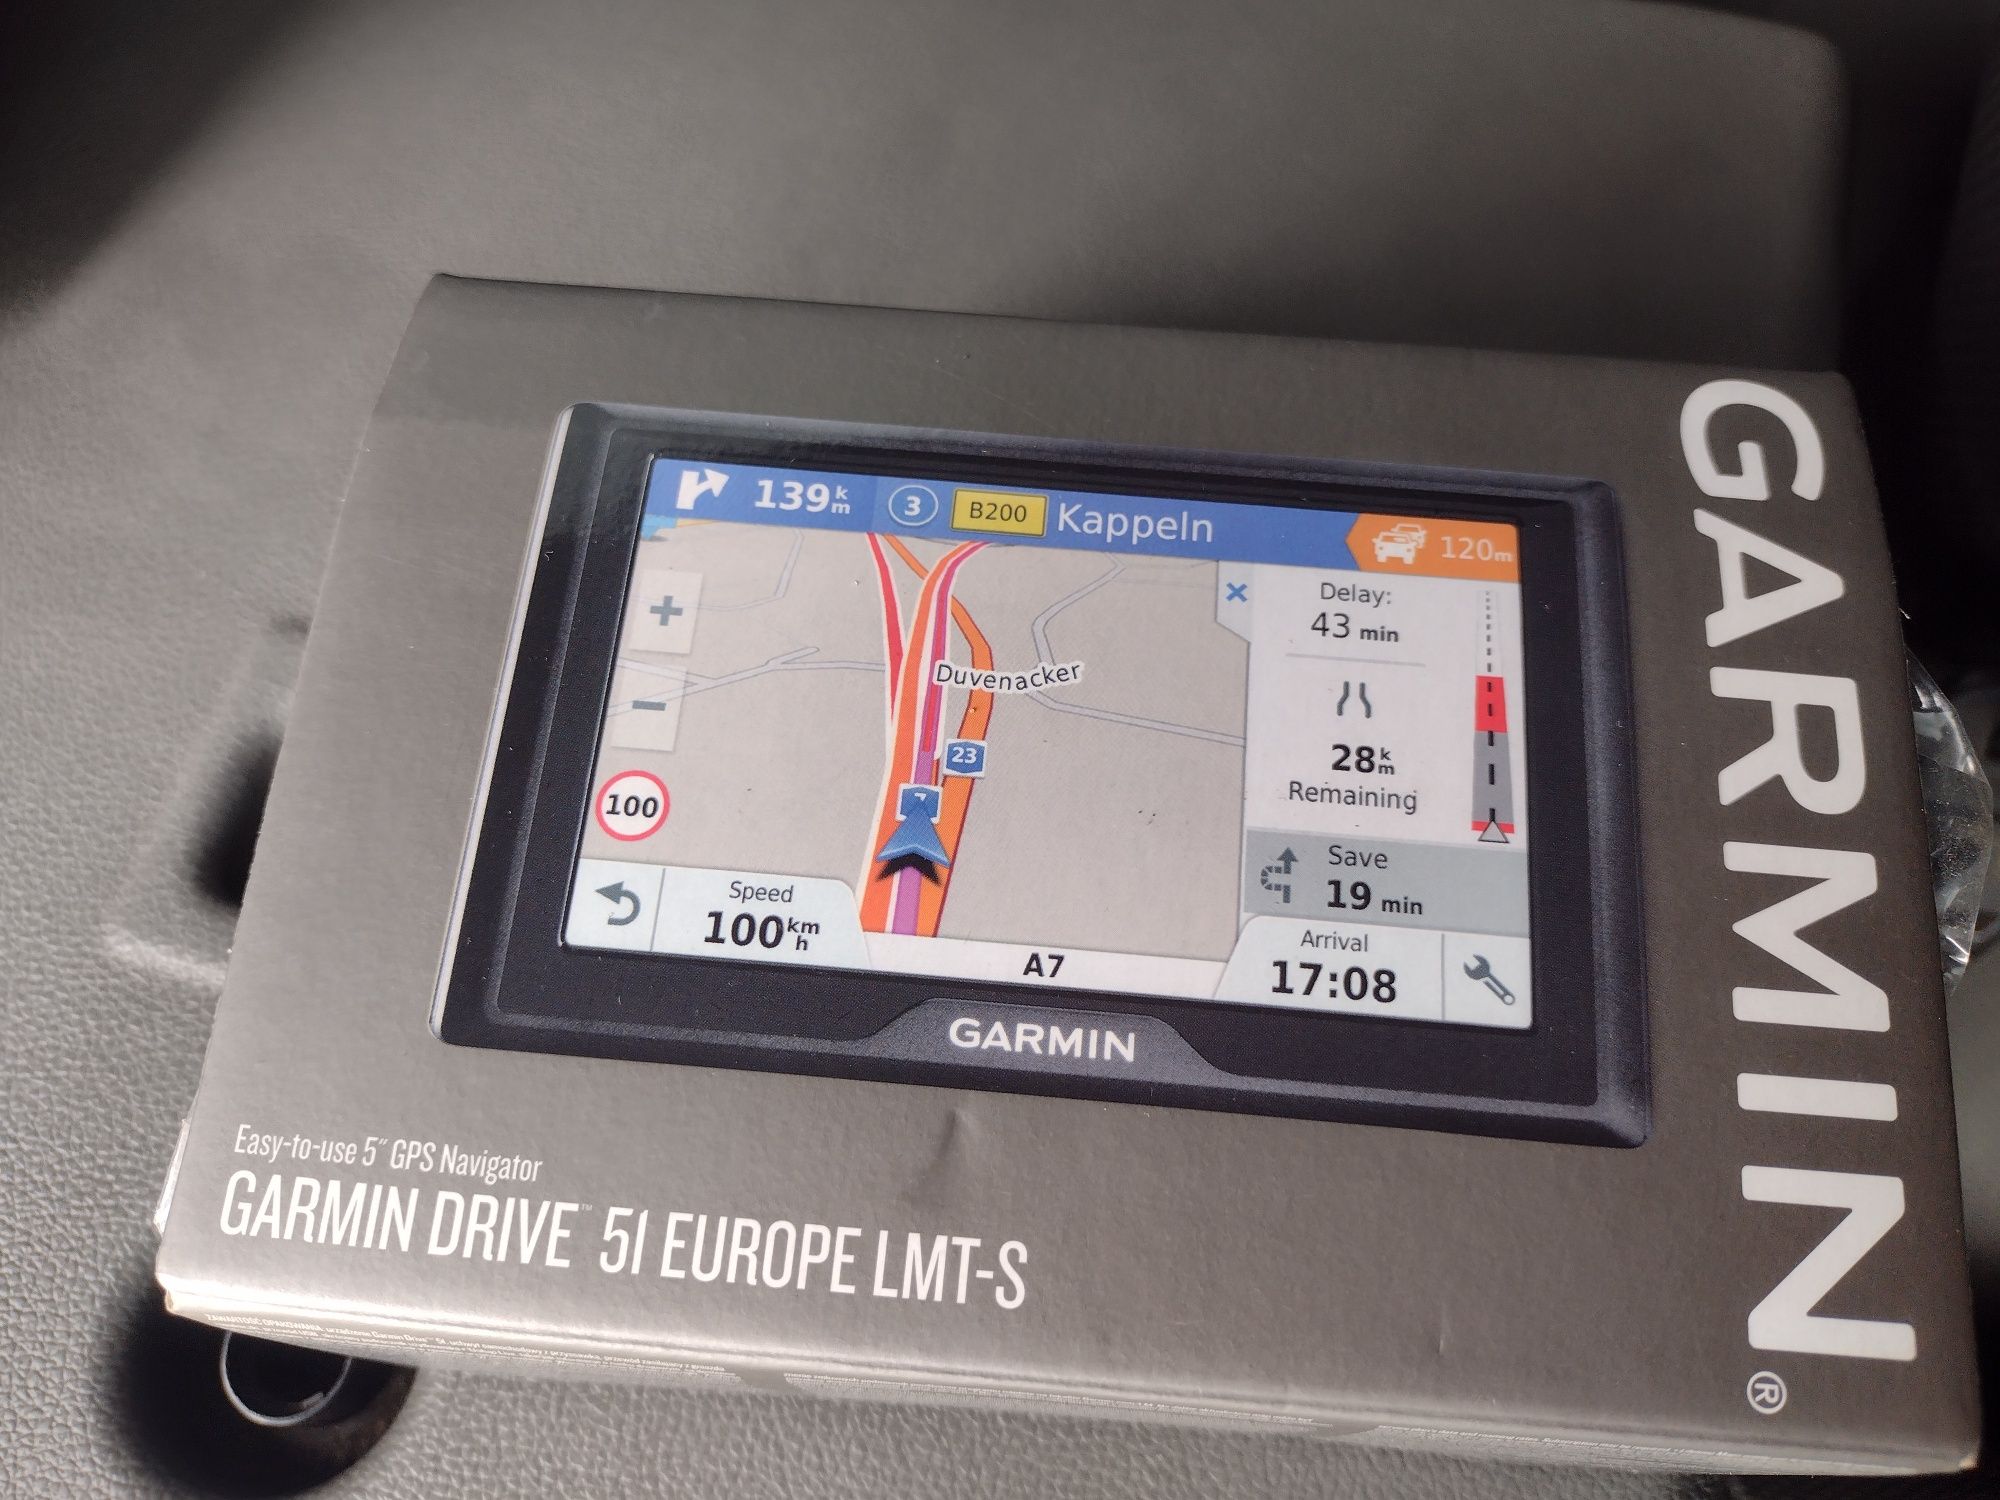 Nawigacja samochodowa Garmin Driver 5l Europę LMT-S